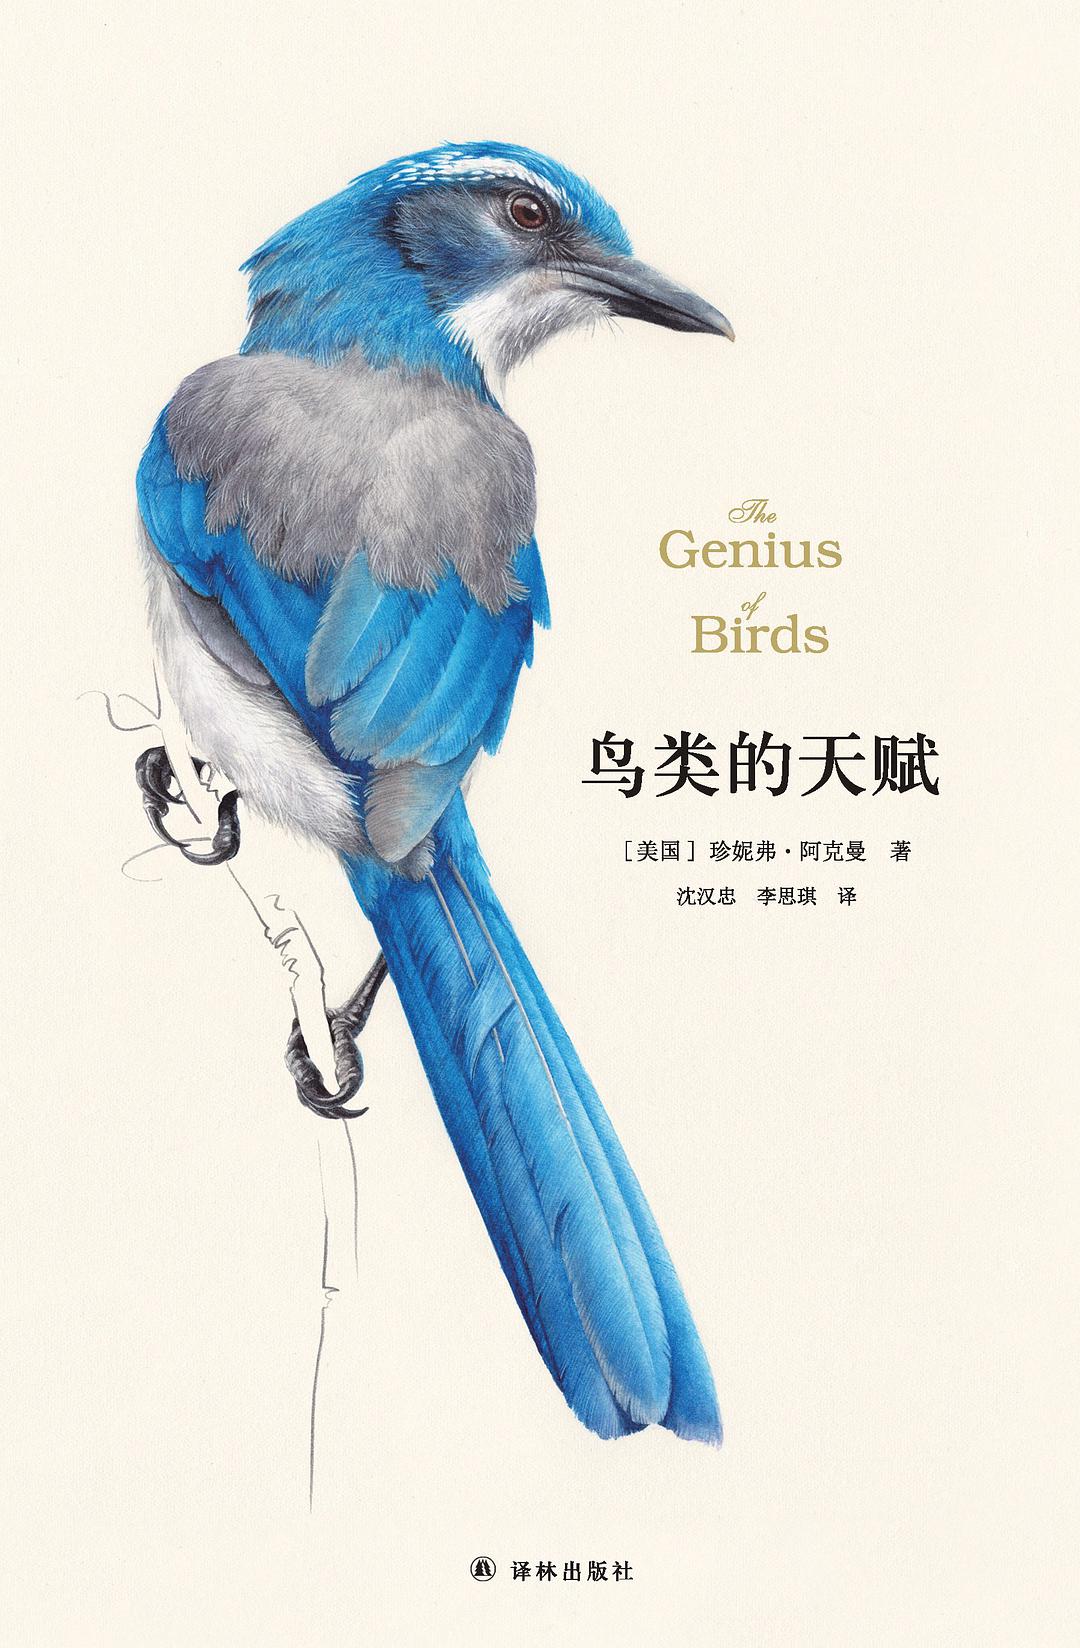 鸟类的天赋-好书天下